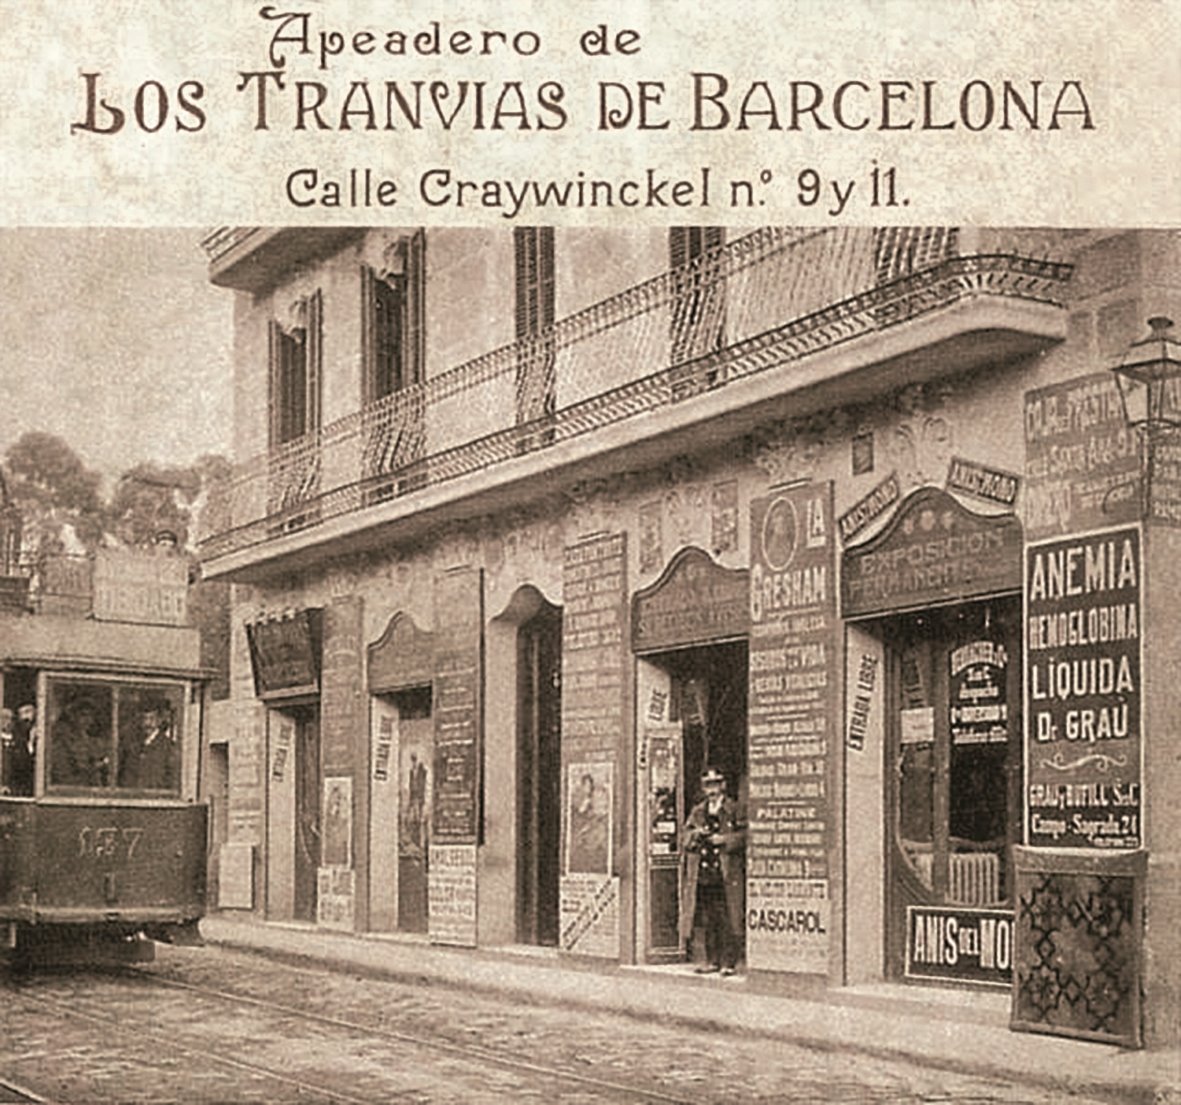 Barcelona: Enric H. March ofereix una anatomia històrica de la ciutat